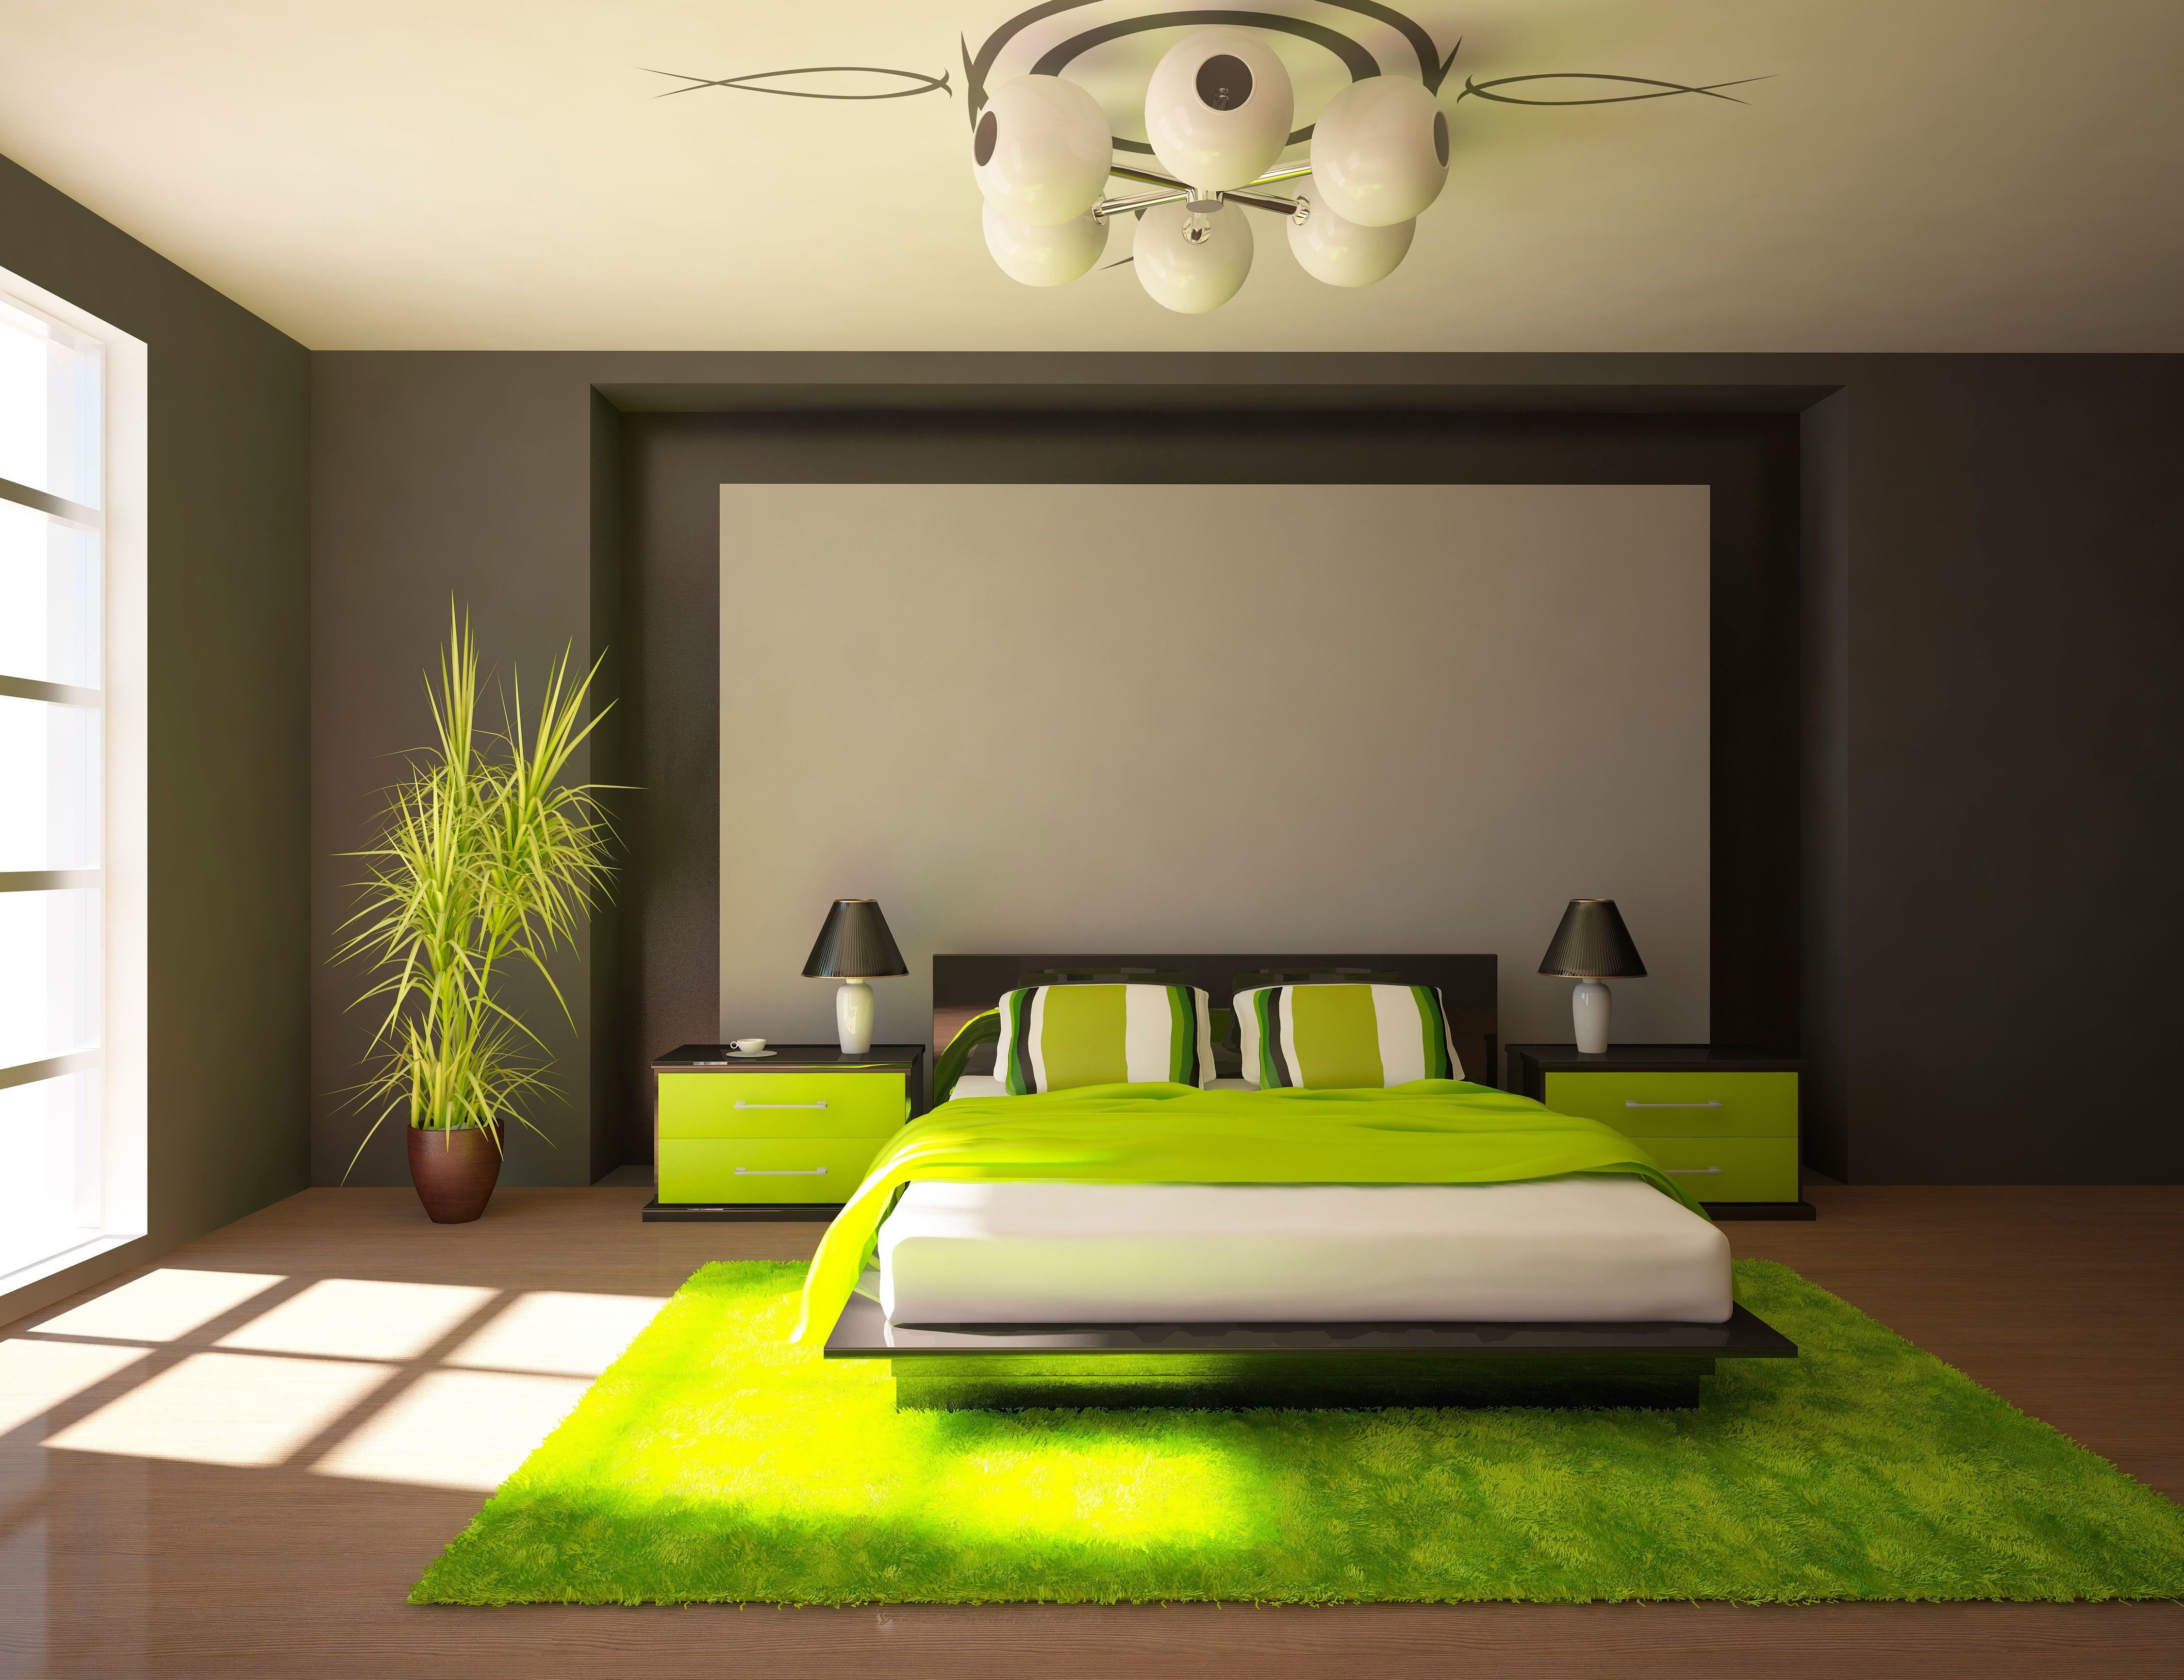 Room78. Спальня в салатовых тонах. Спальня в зеленых тонах. Спальня в зеленом цвете. Спальня в зеленых оттенках.